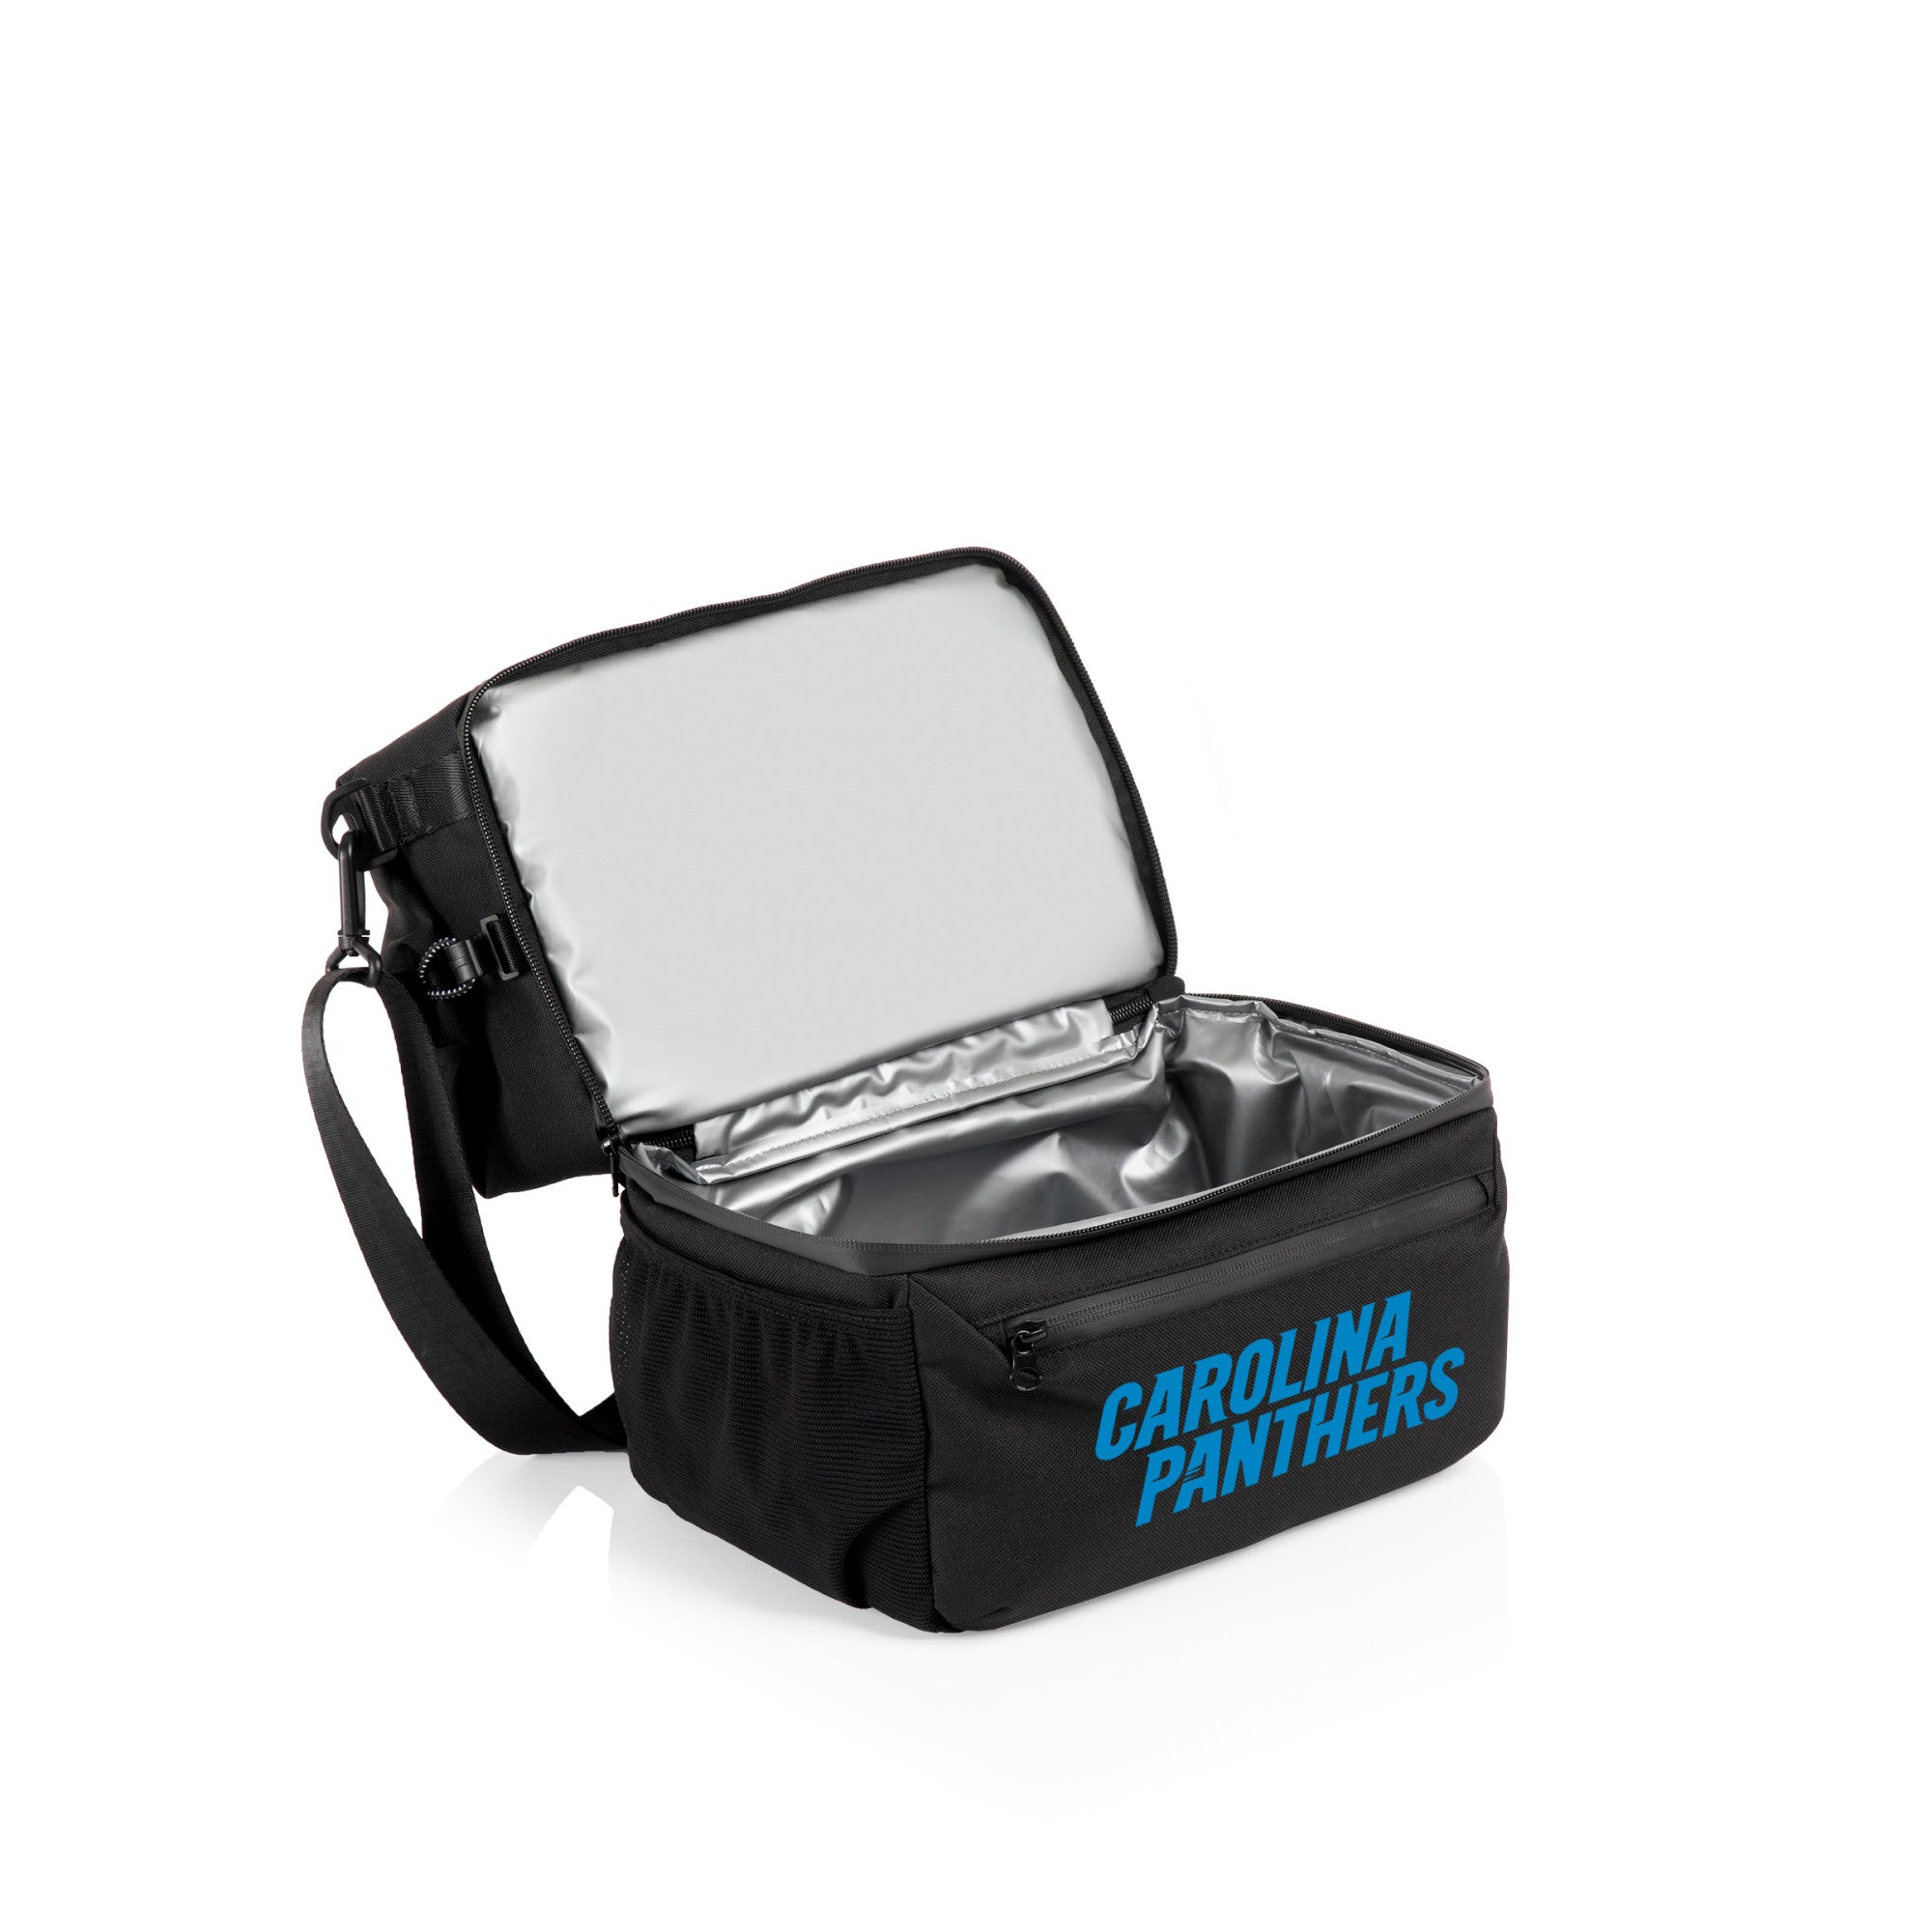 Carolina Panthers - Tarana Lunch Bag Cooler with Utensils